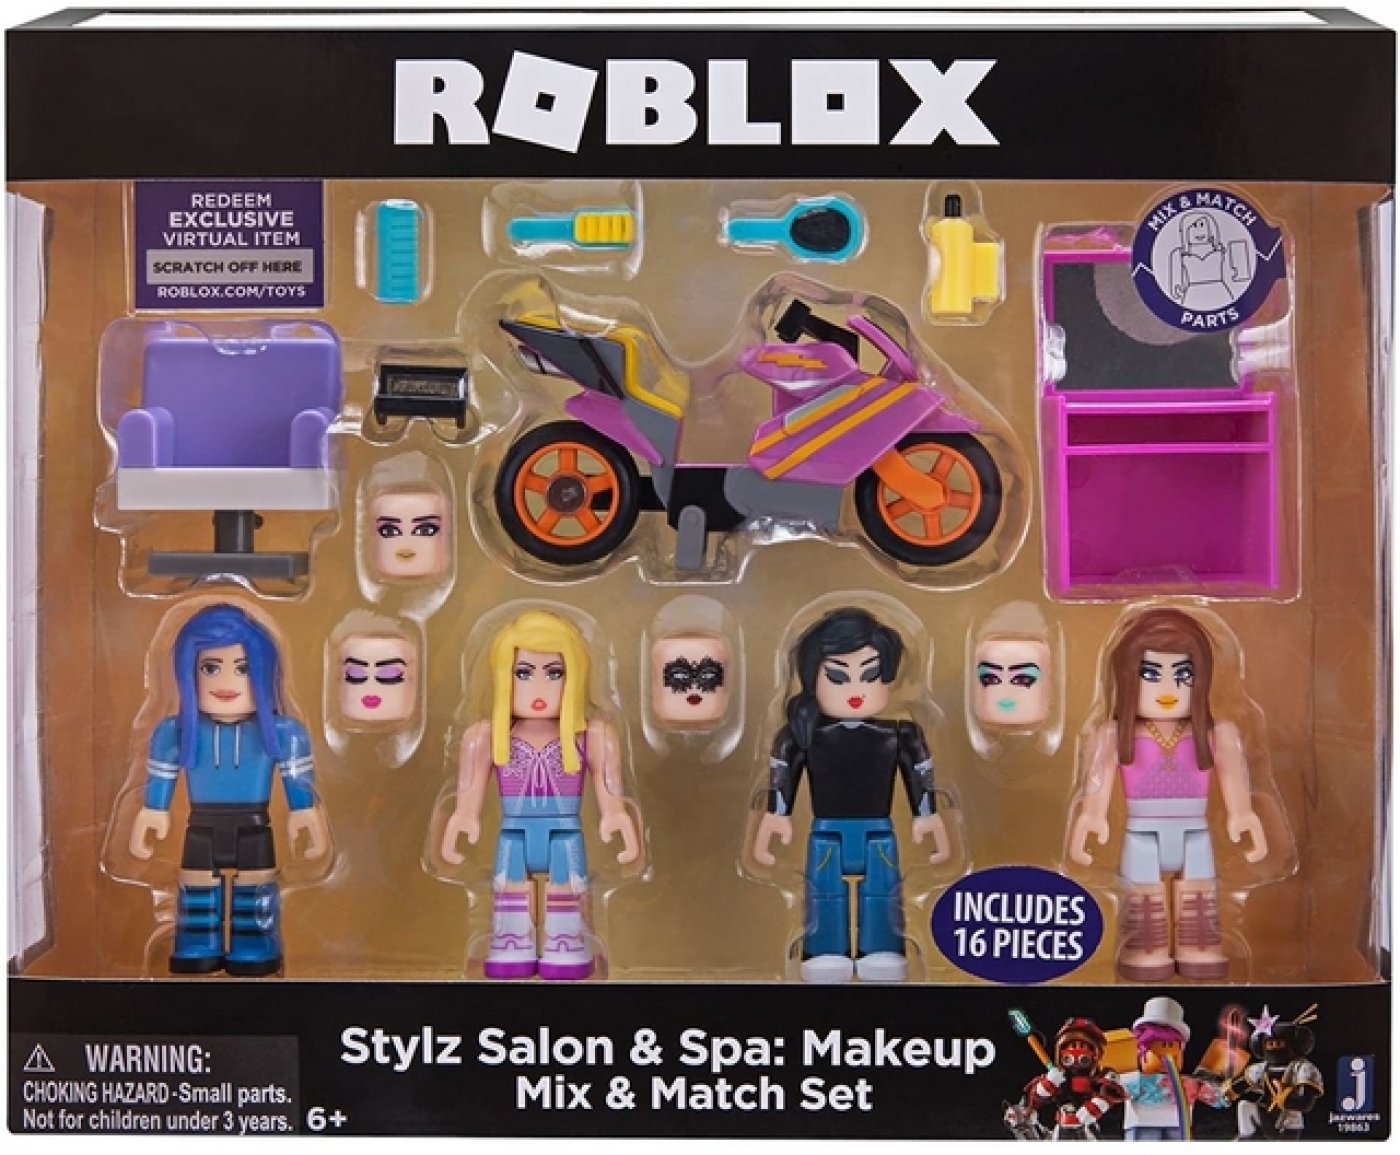 Roblox Stylz Salon & Spa 4 Figuras Con Accesorios